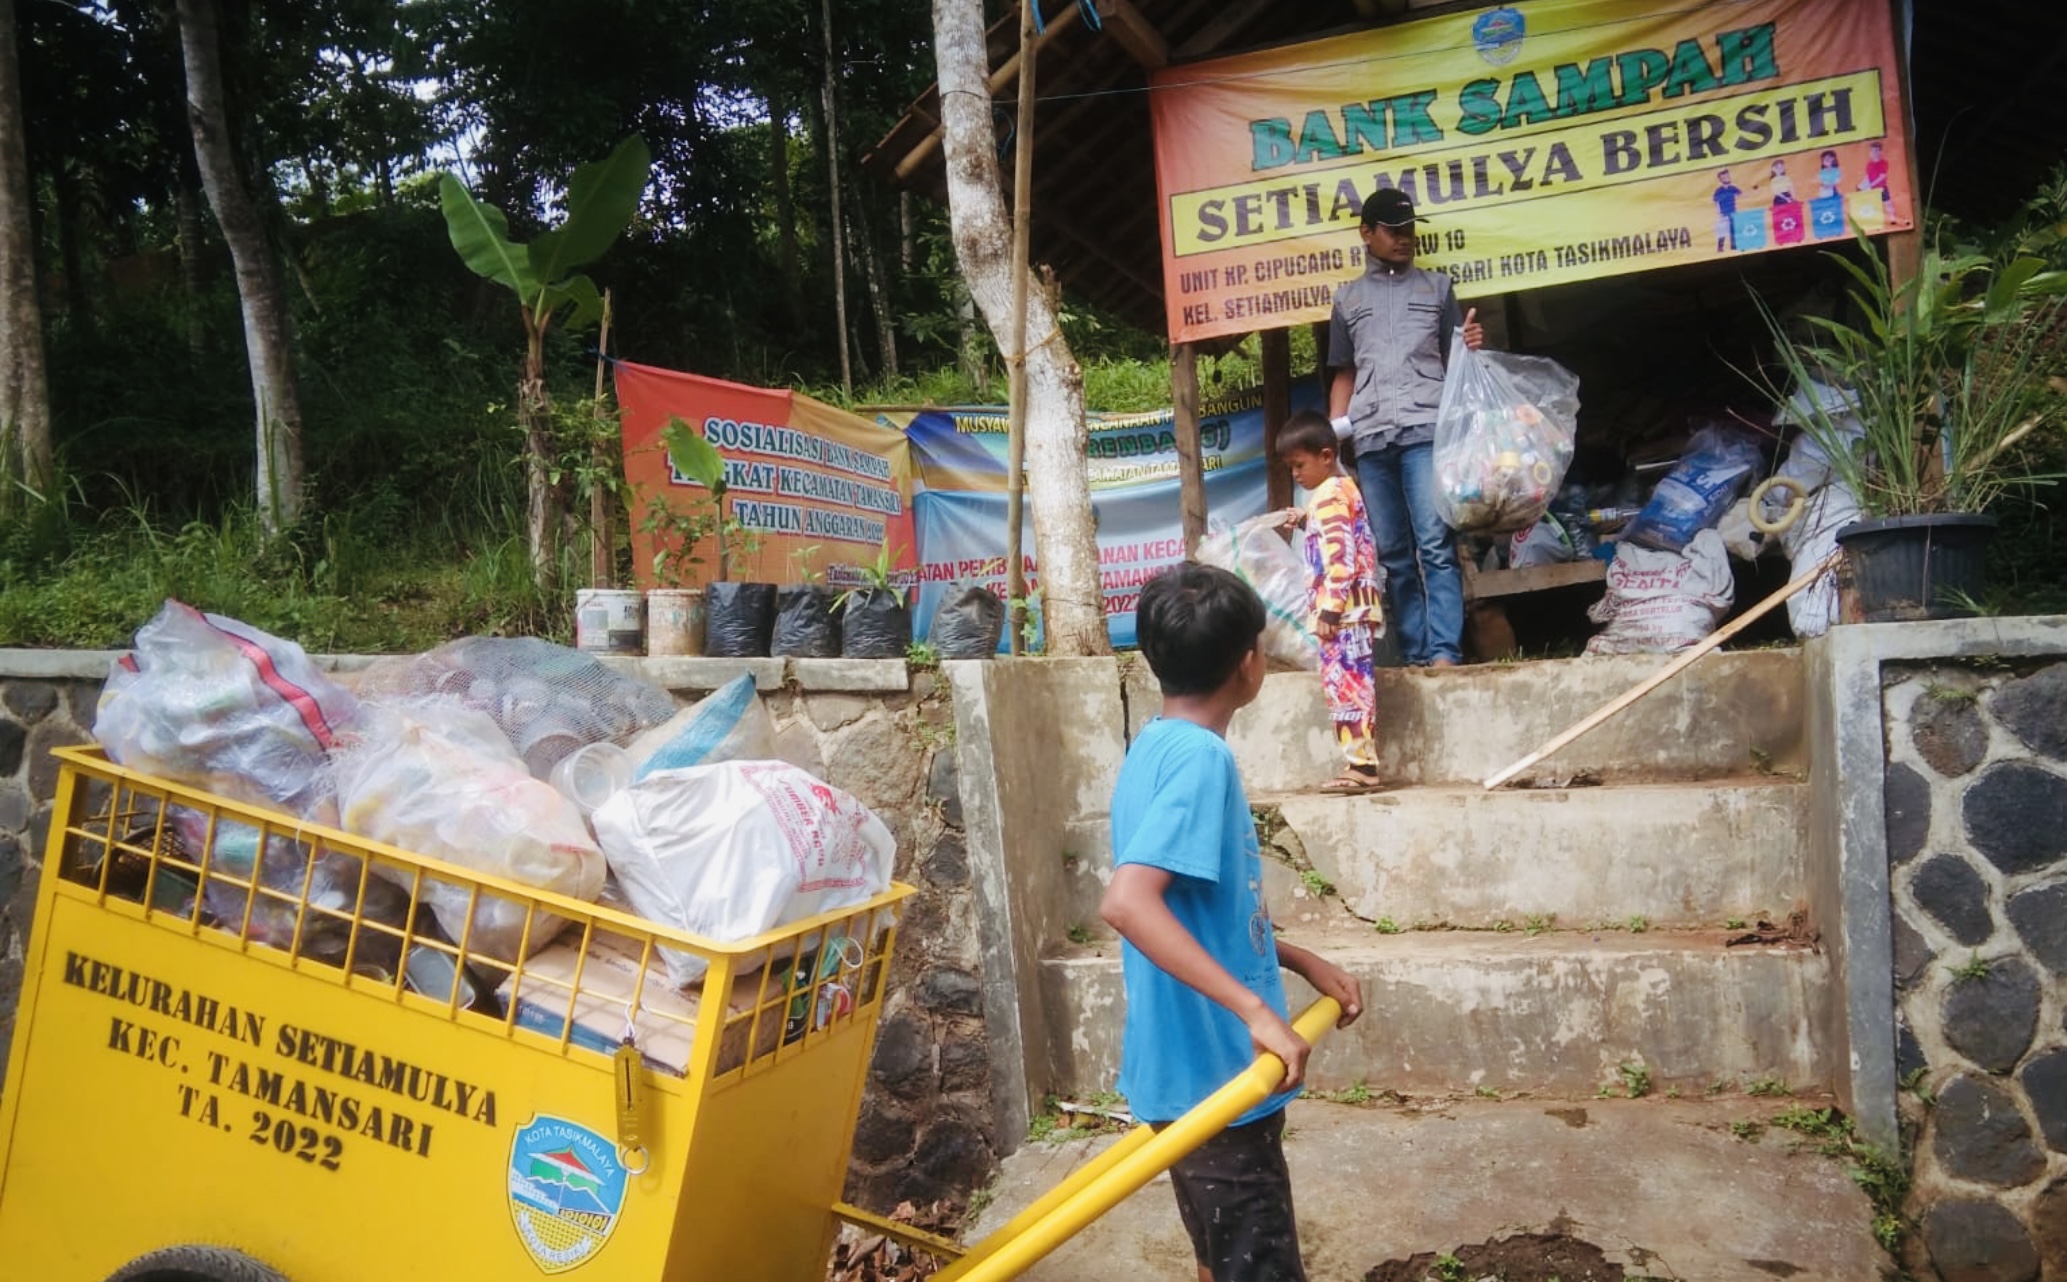 Bank Sampah Setiamulya Bersih, Berawal dari Kepedulian Pemuda, Ku Bank Sampah Mah Milihan Sampah Jadi Barokah